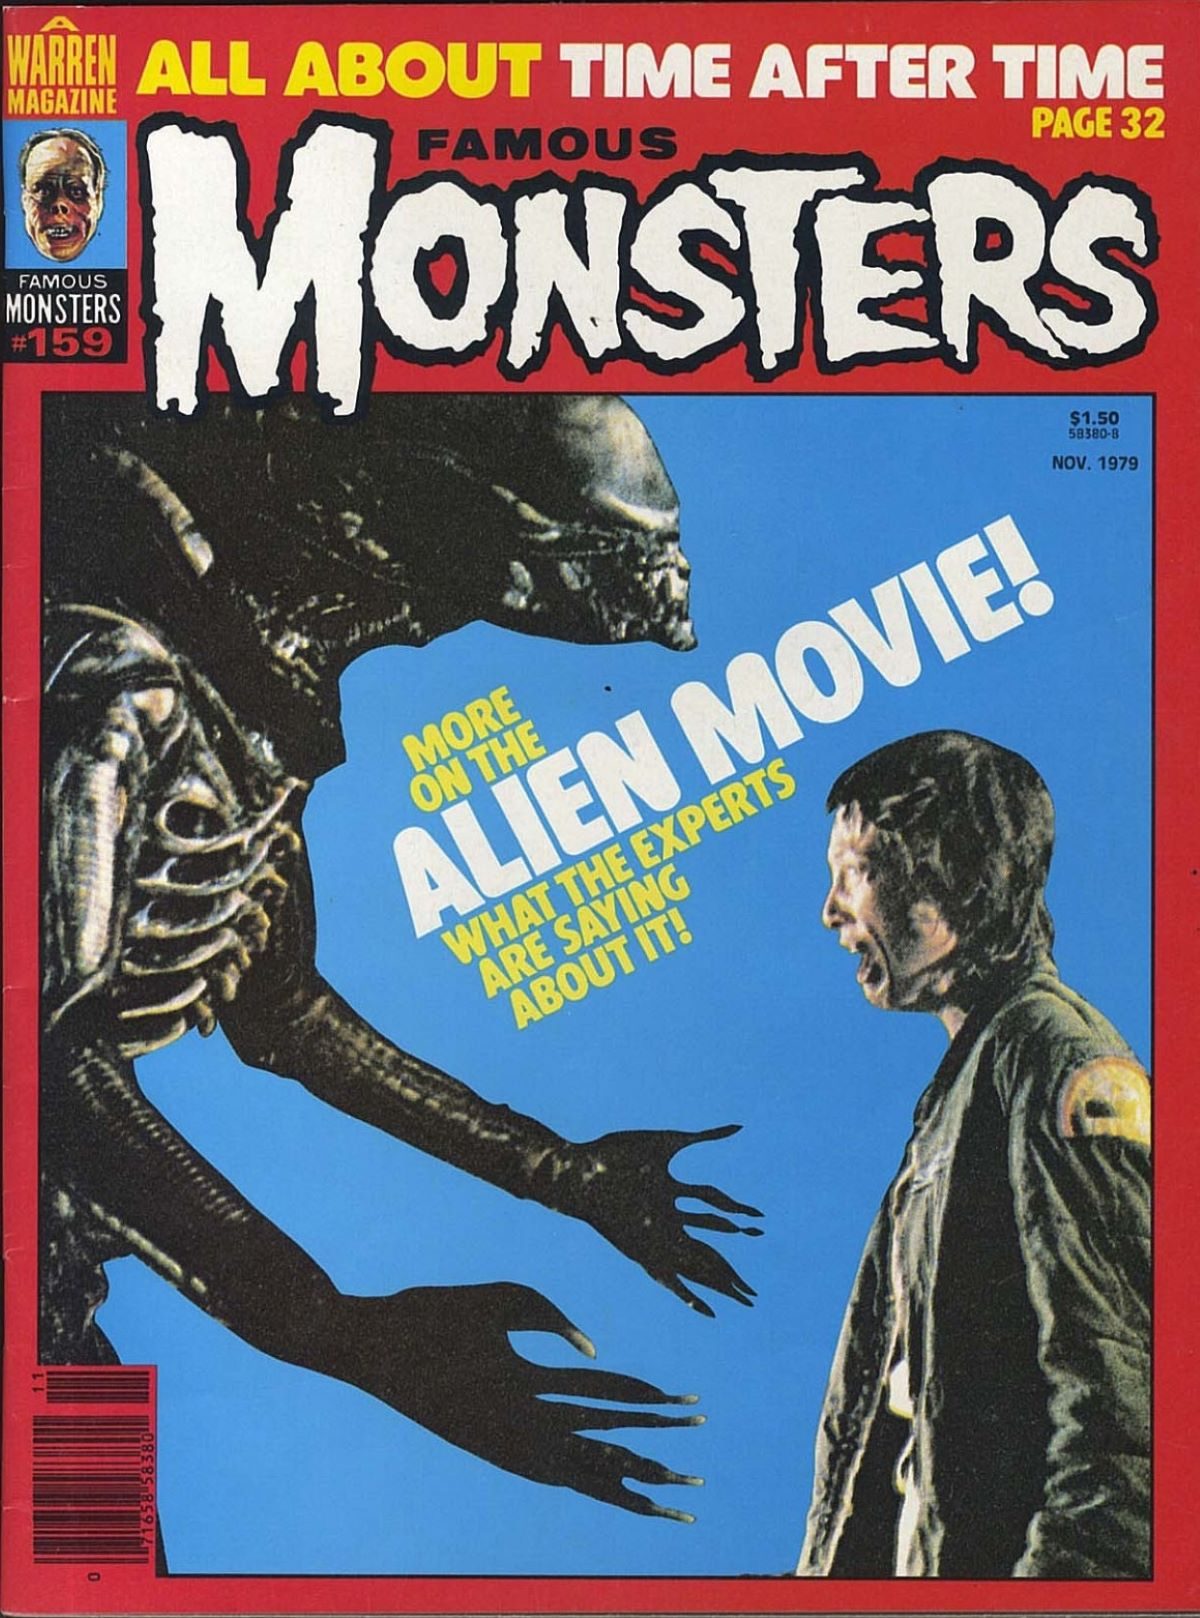 Famous Monsters of Filmland, magazine, horror films, Alien